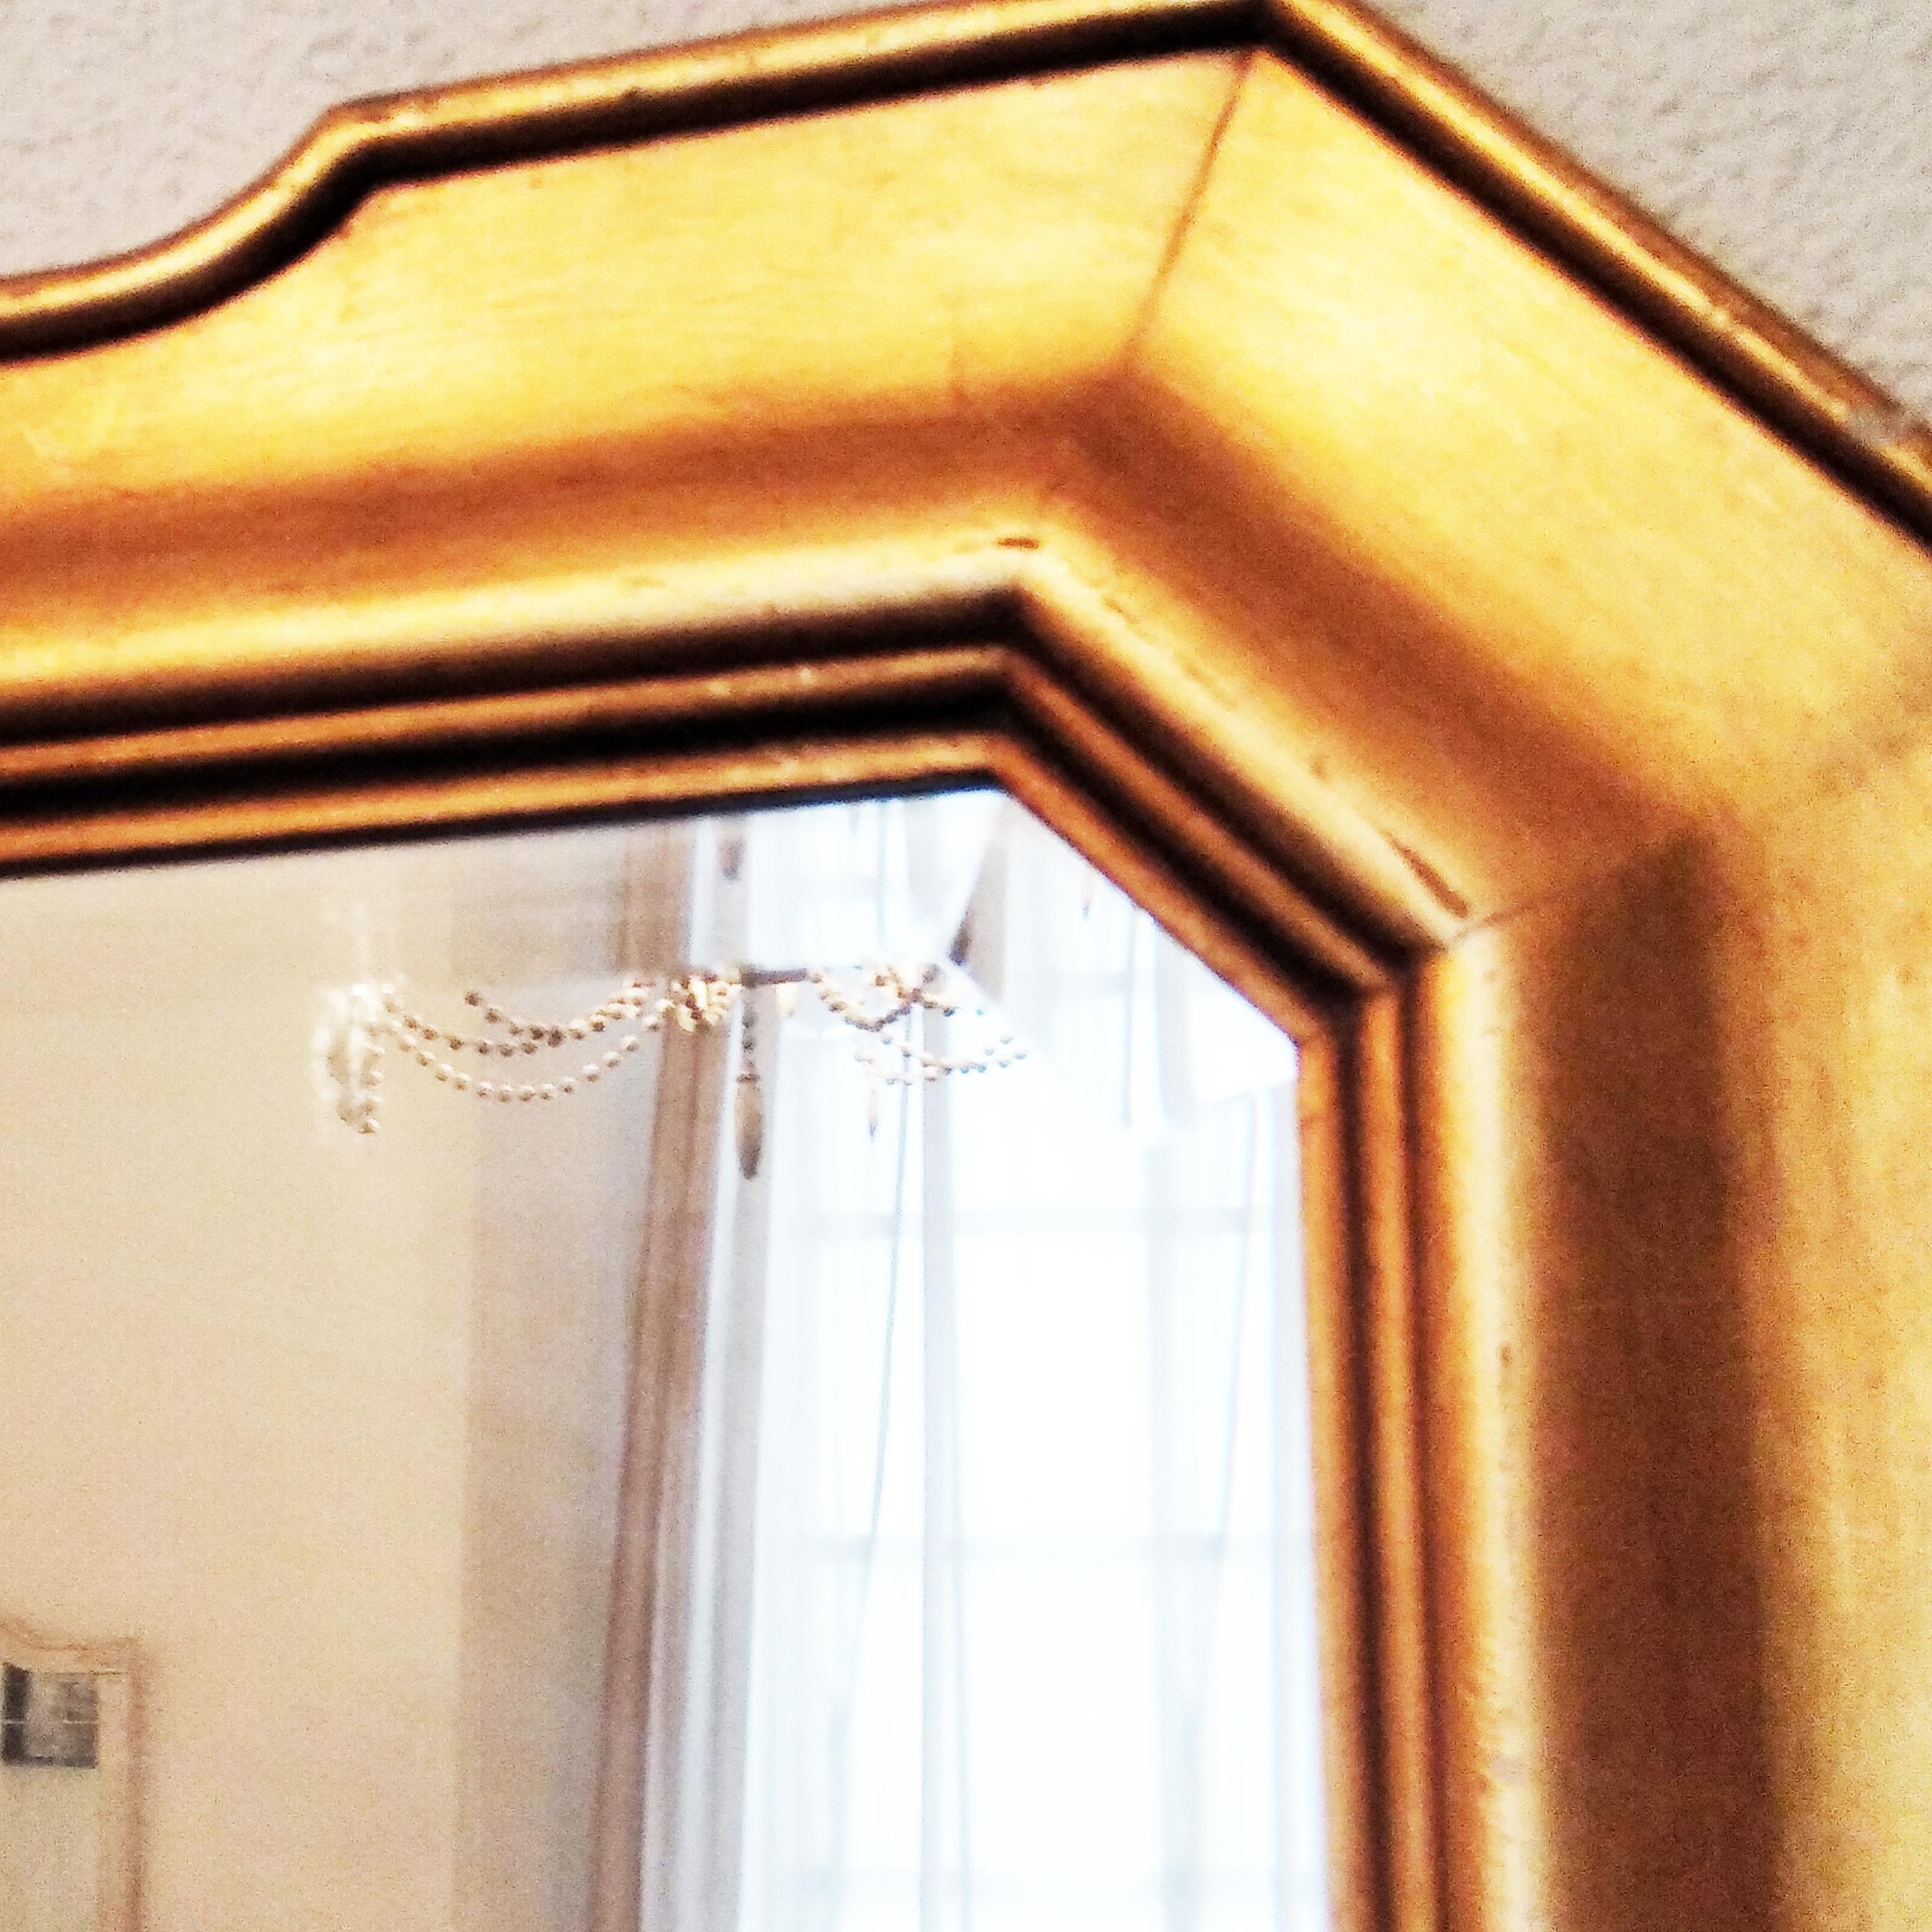 Blattgold Spiegel Holz. Geschliffenes Glas. Geometrische Form. Gewicht 7'3kg. Abmessungen 70cm x 90cm.
mit abgeschrägtem und abgenutztem Glas
Vertikale oder horizontale Position des Spiegels
Konsolenspiegel, Eingangsspiegel, Badezimmerspiegel,